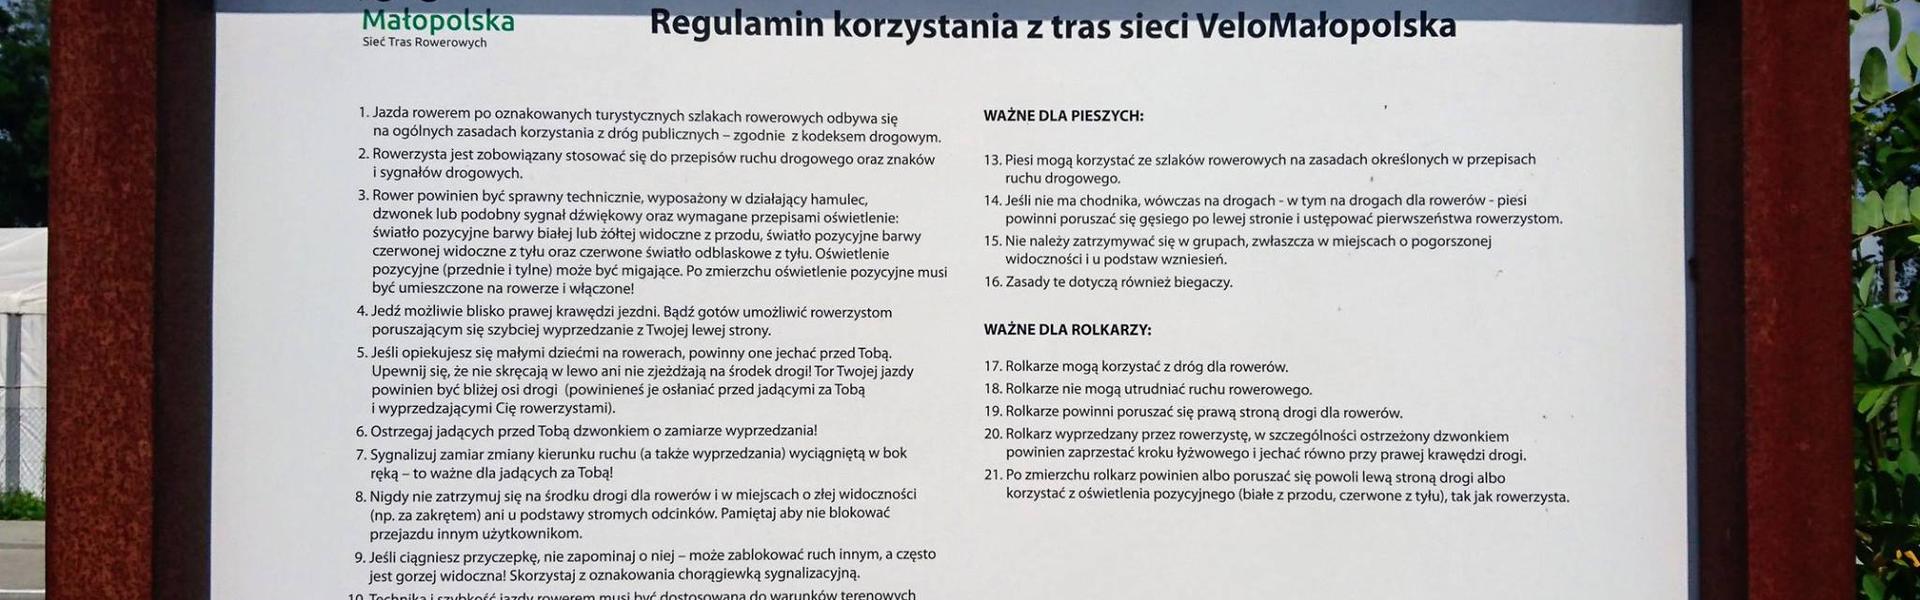 Regulamin tras Velo Małopolska